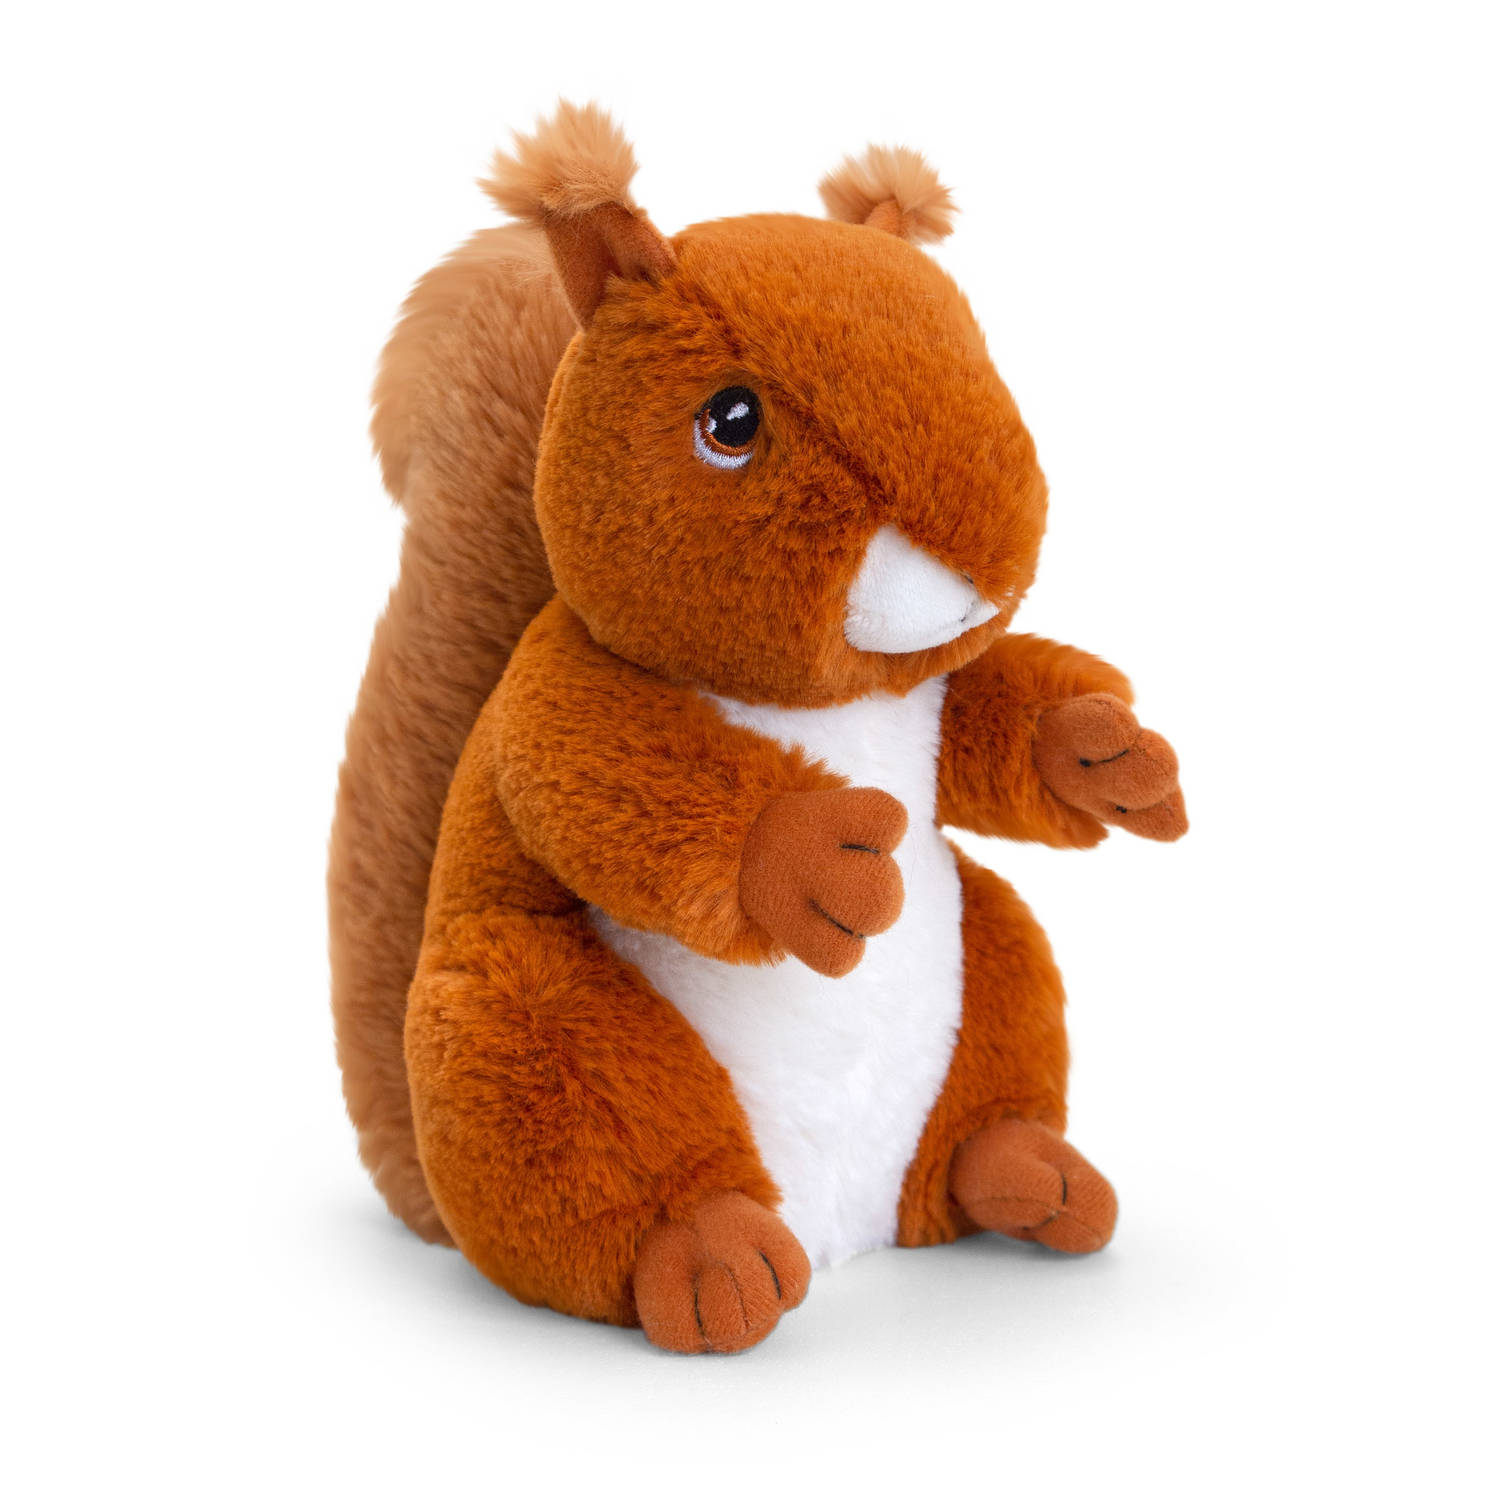 Keel Toys Knuffel - Eekhoorn - rood - dieren knuffels - pluche - 18 cm